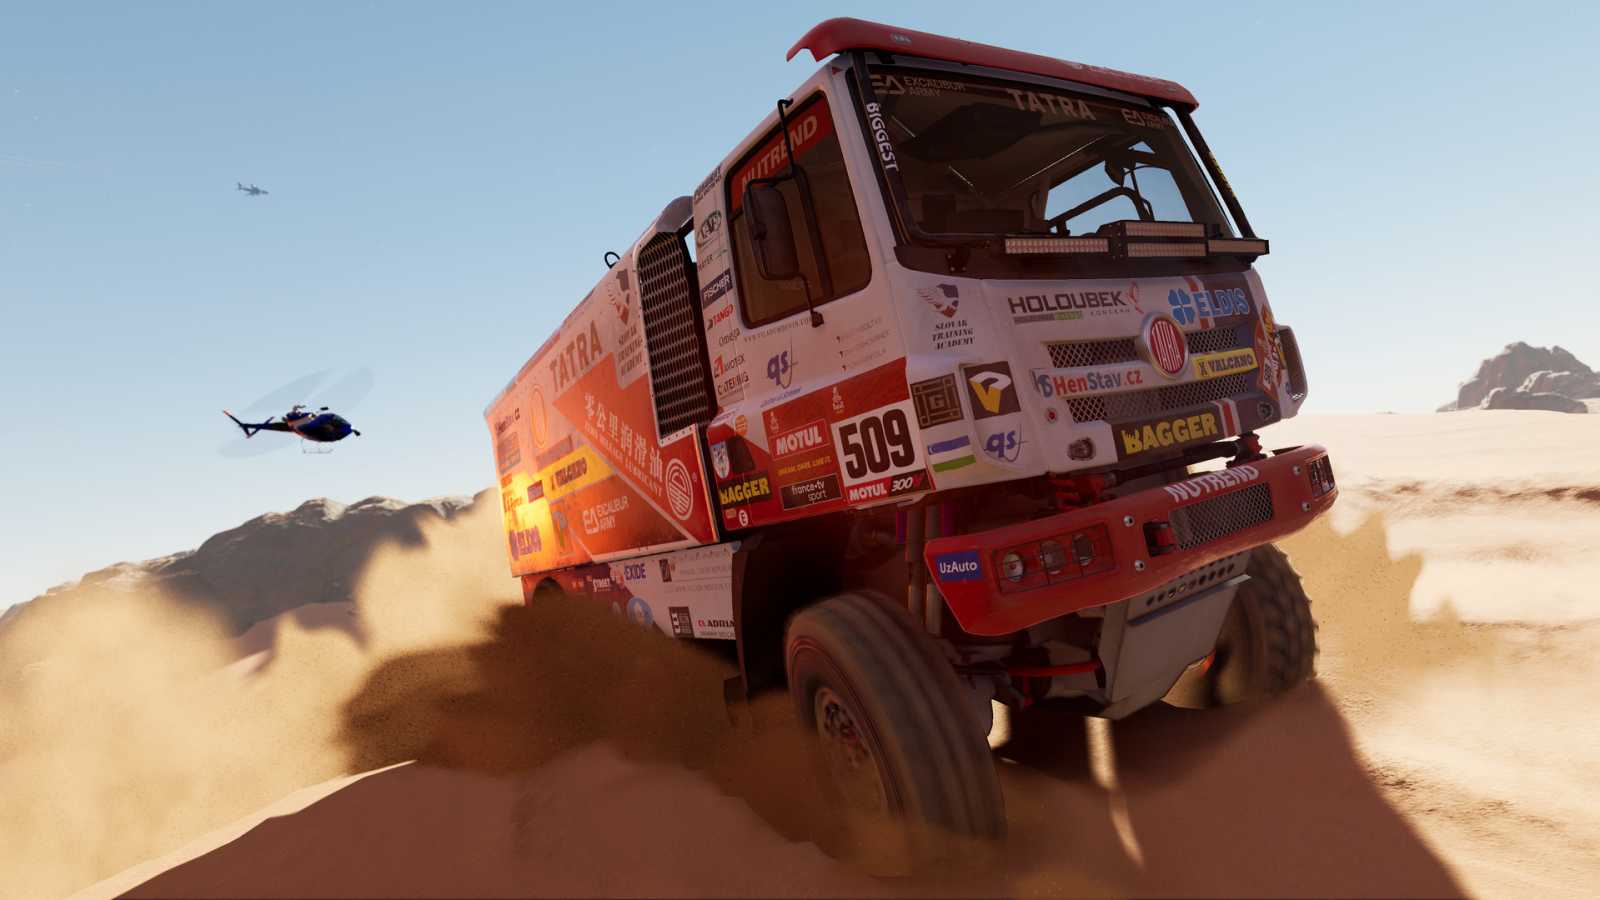 Vypukl skutečný Dakar. Jak v současnosti vypadá herní Dakar Desert Rally? Solidně se rozšířil, ale spousta obsahu stále chybí